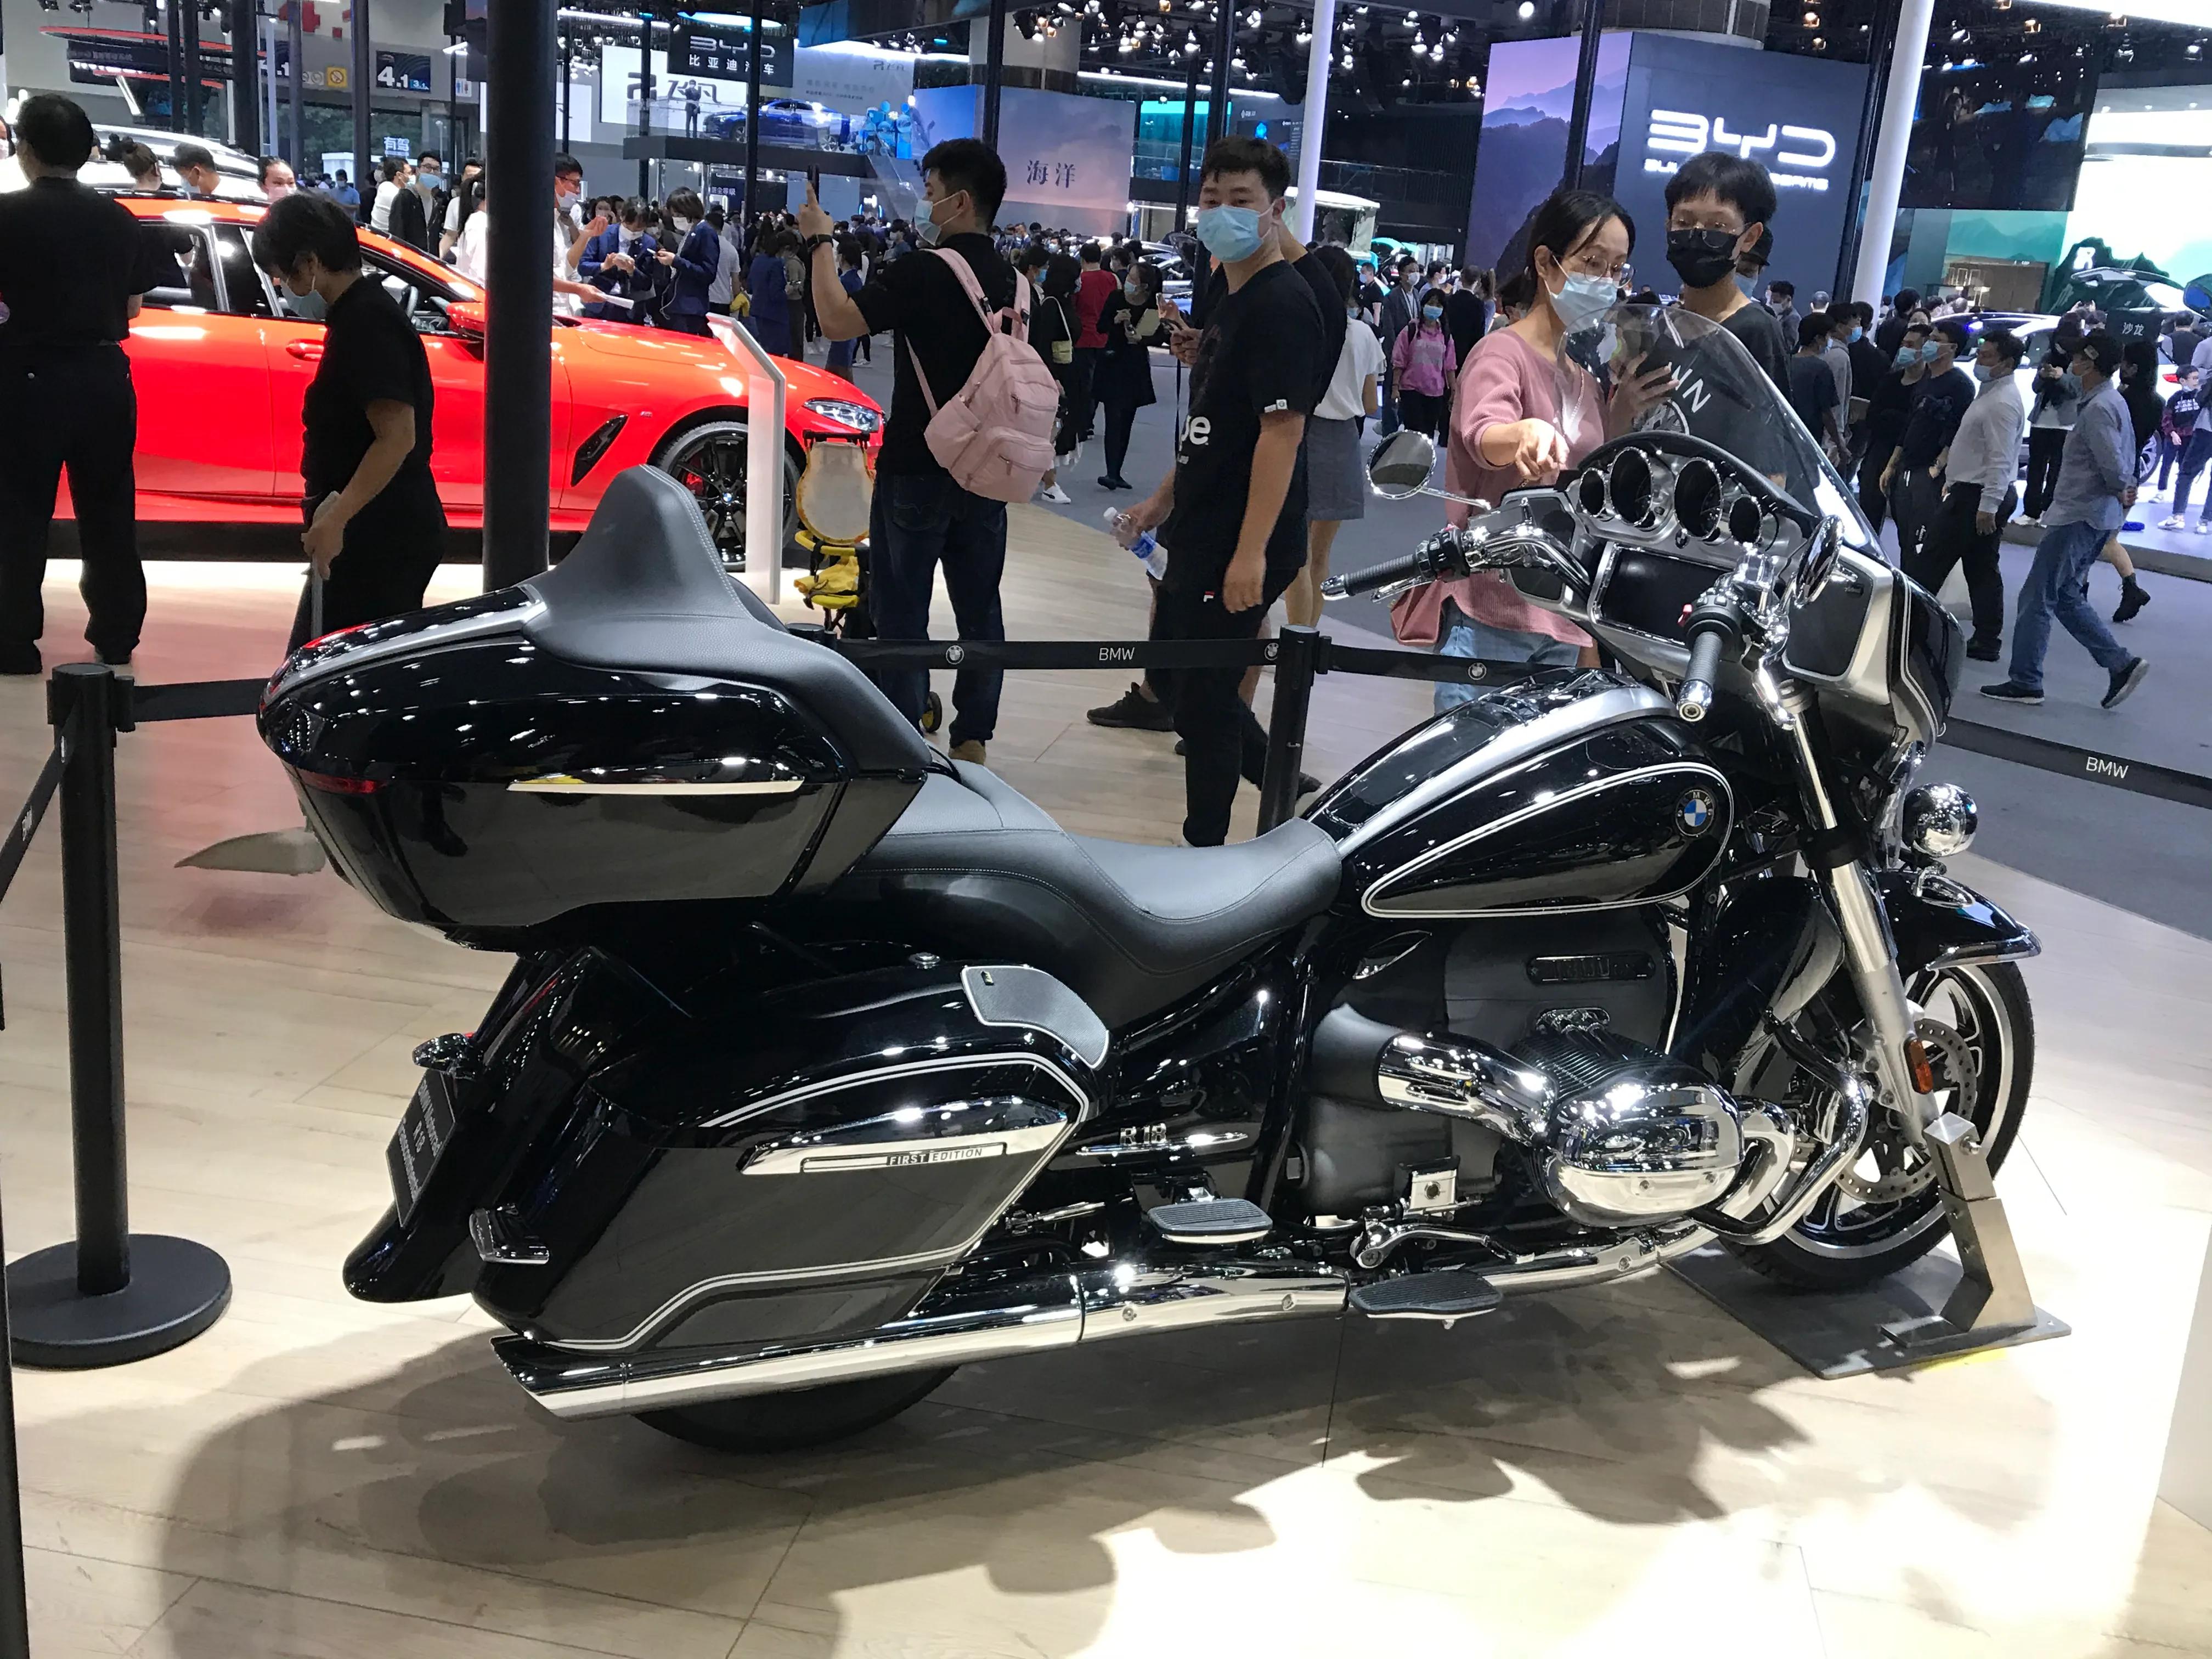 广州车展:40万以上的宝马r18新款摩托展出,哈雷机车能接招吗?